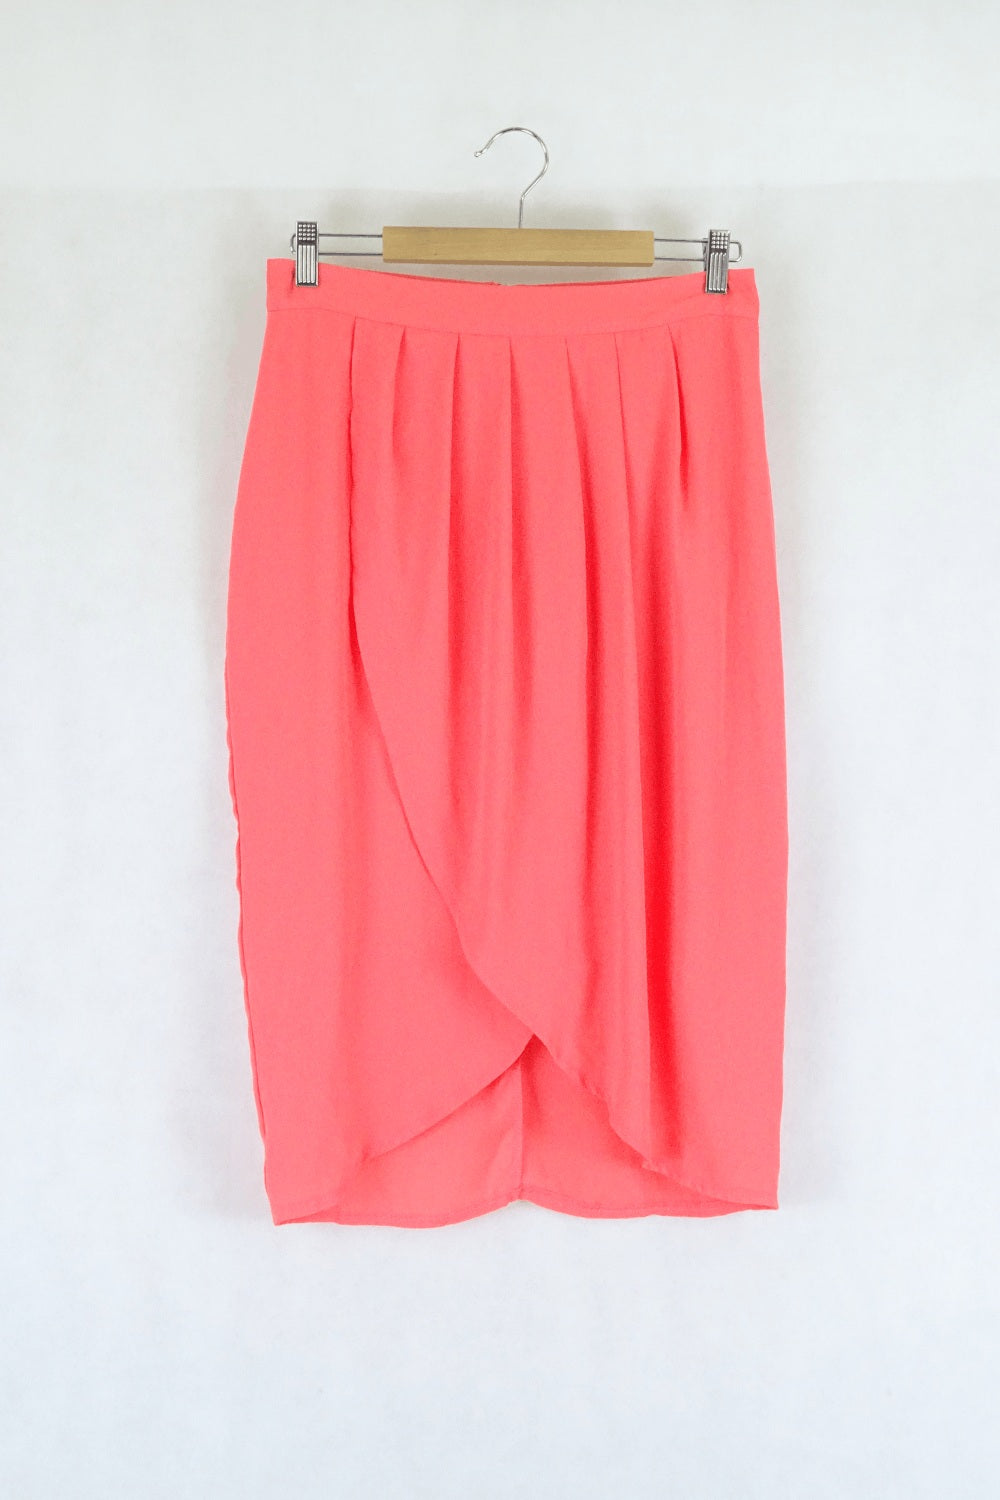 Rosebullet Neon Pink Skirt 12